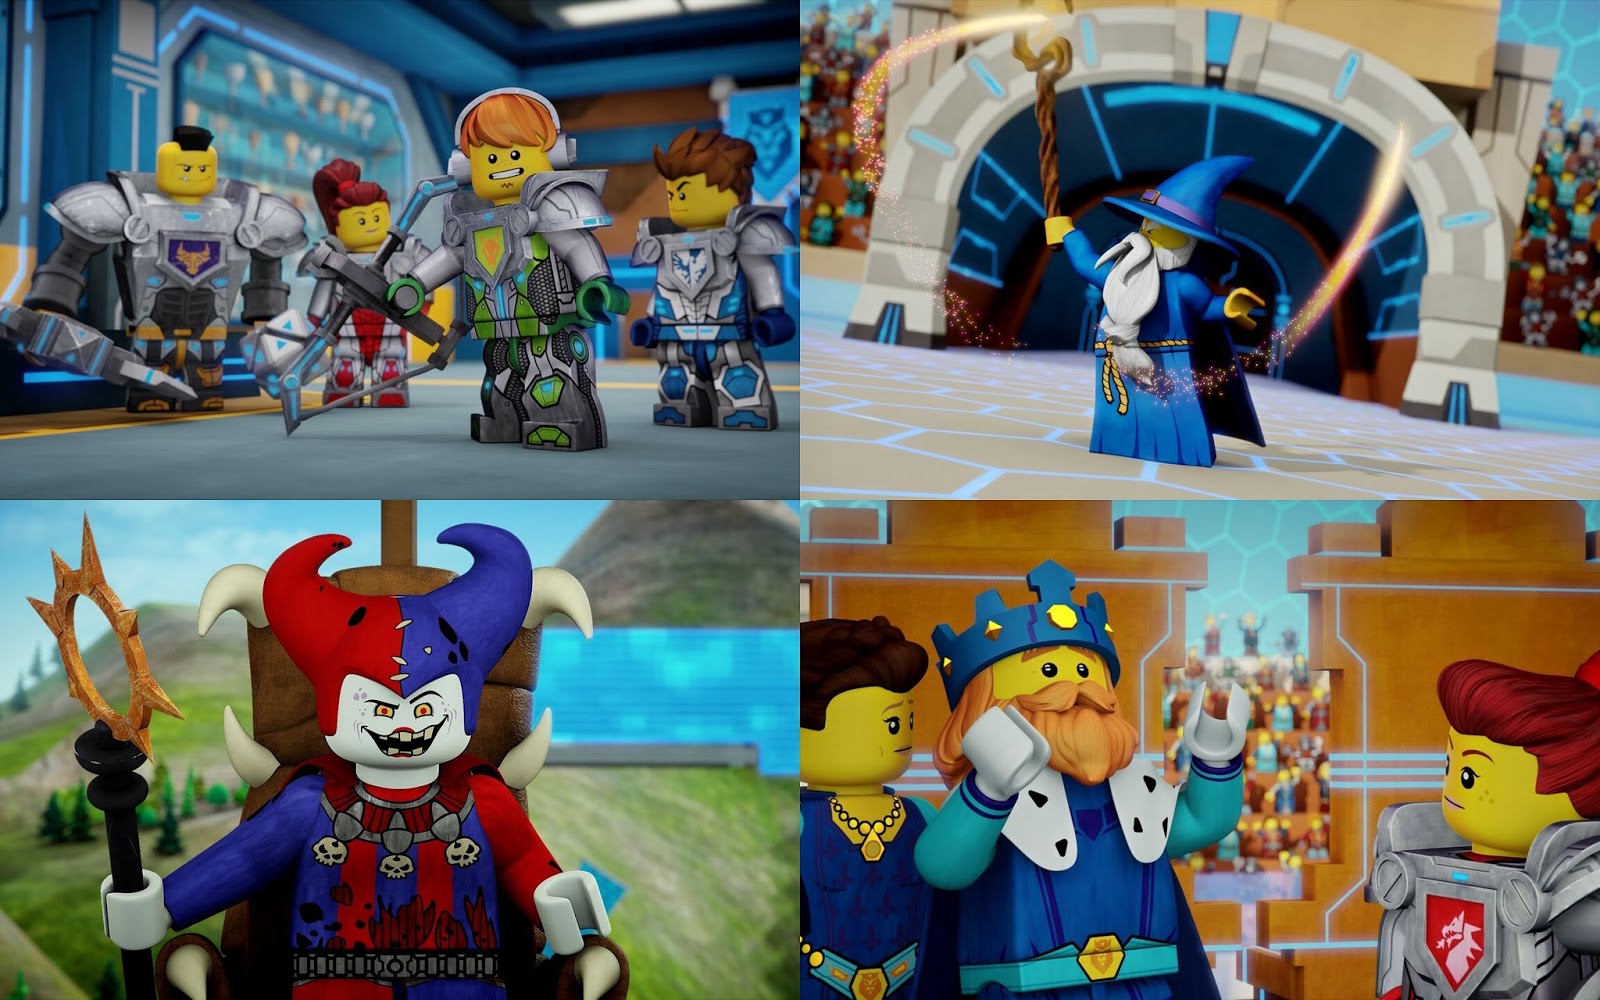 Lego Nexo rytíři / LEGO NEXO Knights ( 2015 )